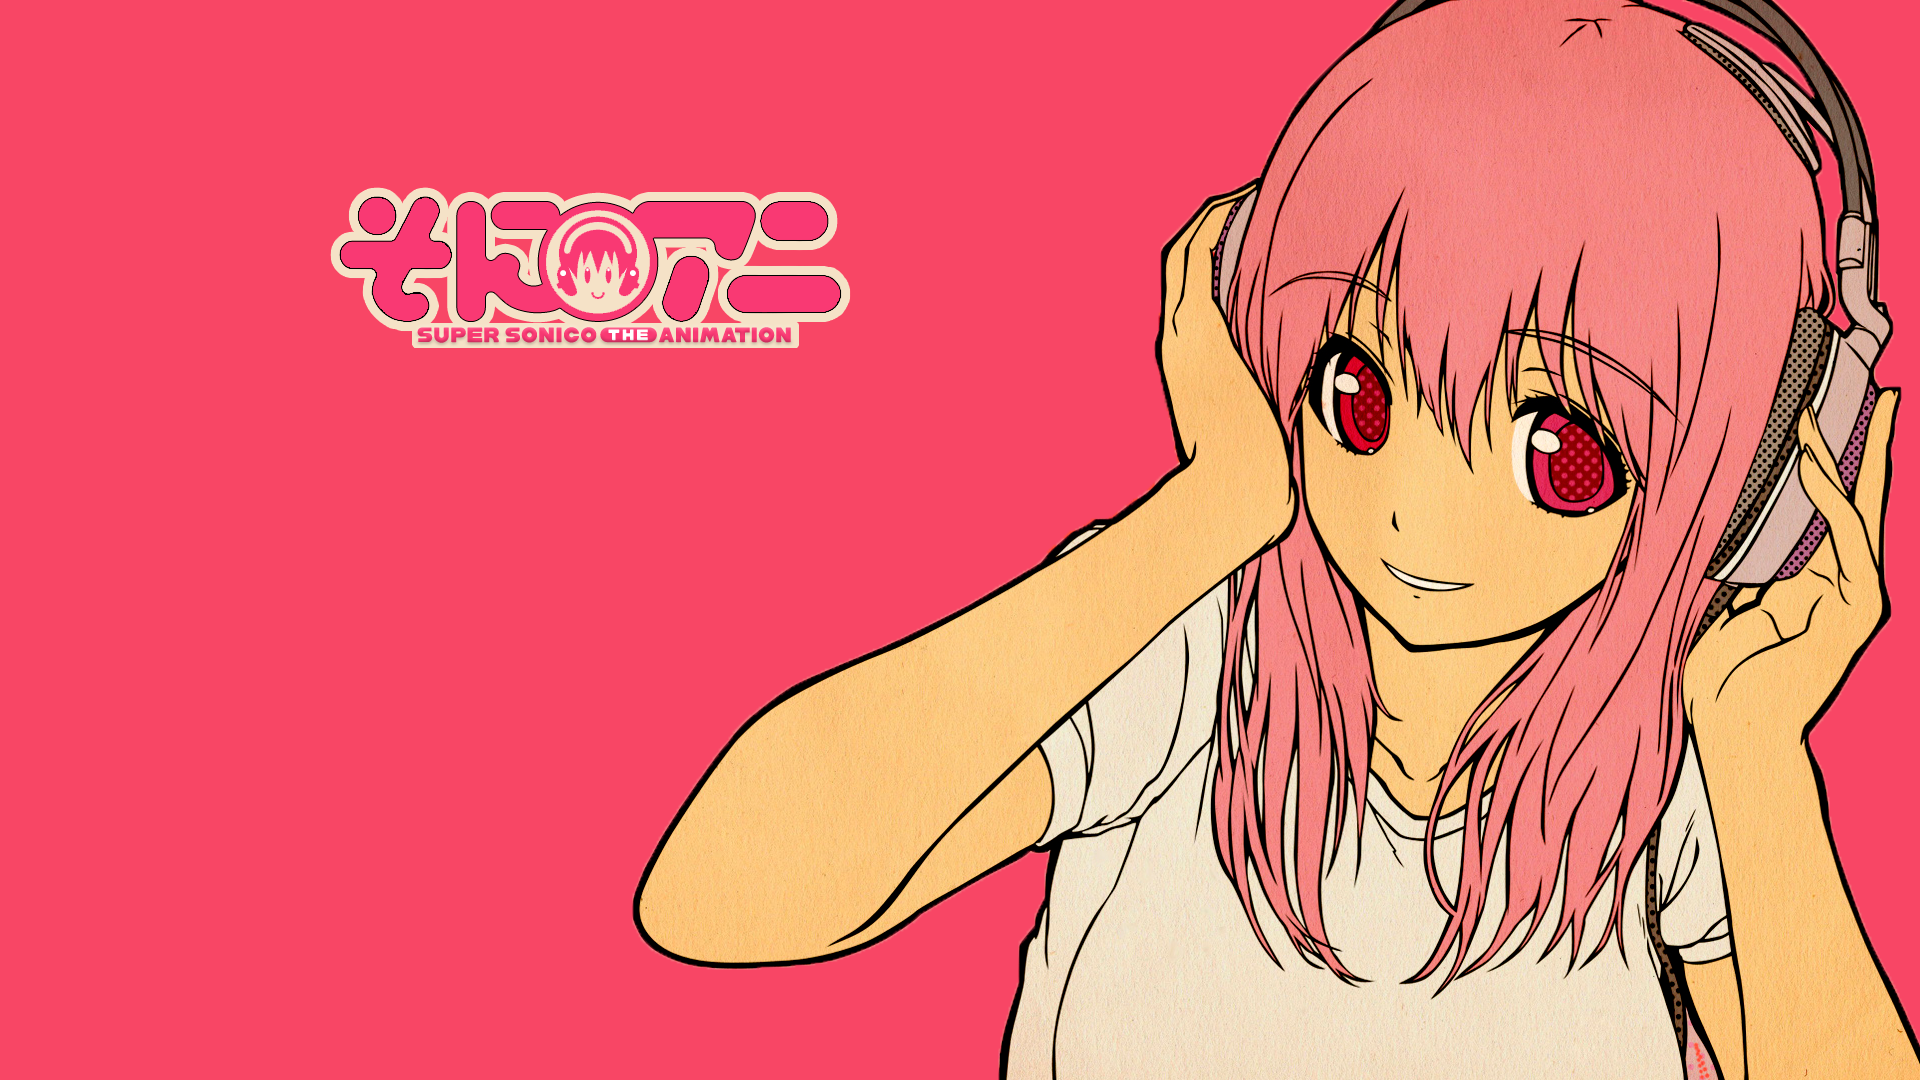 Super Sonico Anime Girls Headphones 1920x1080